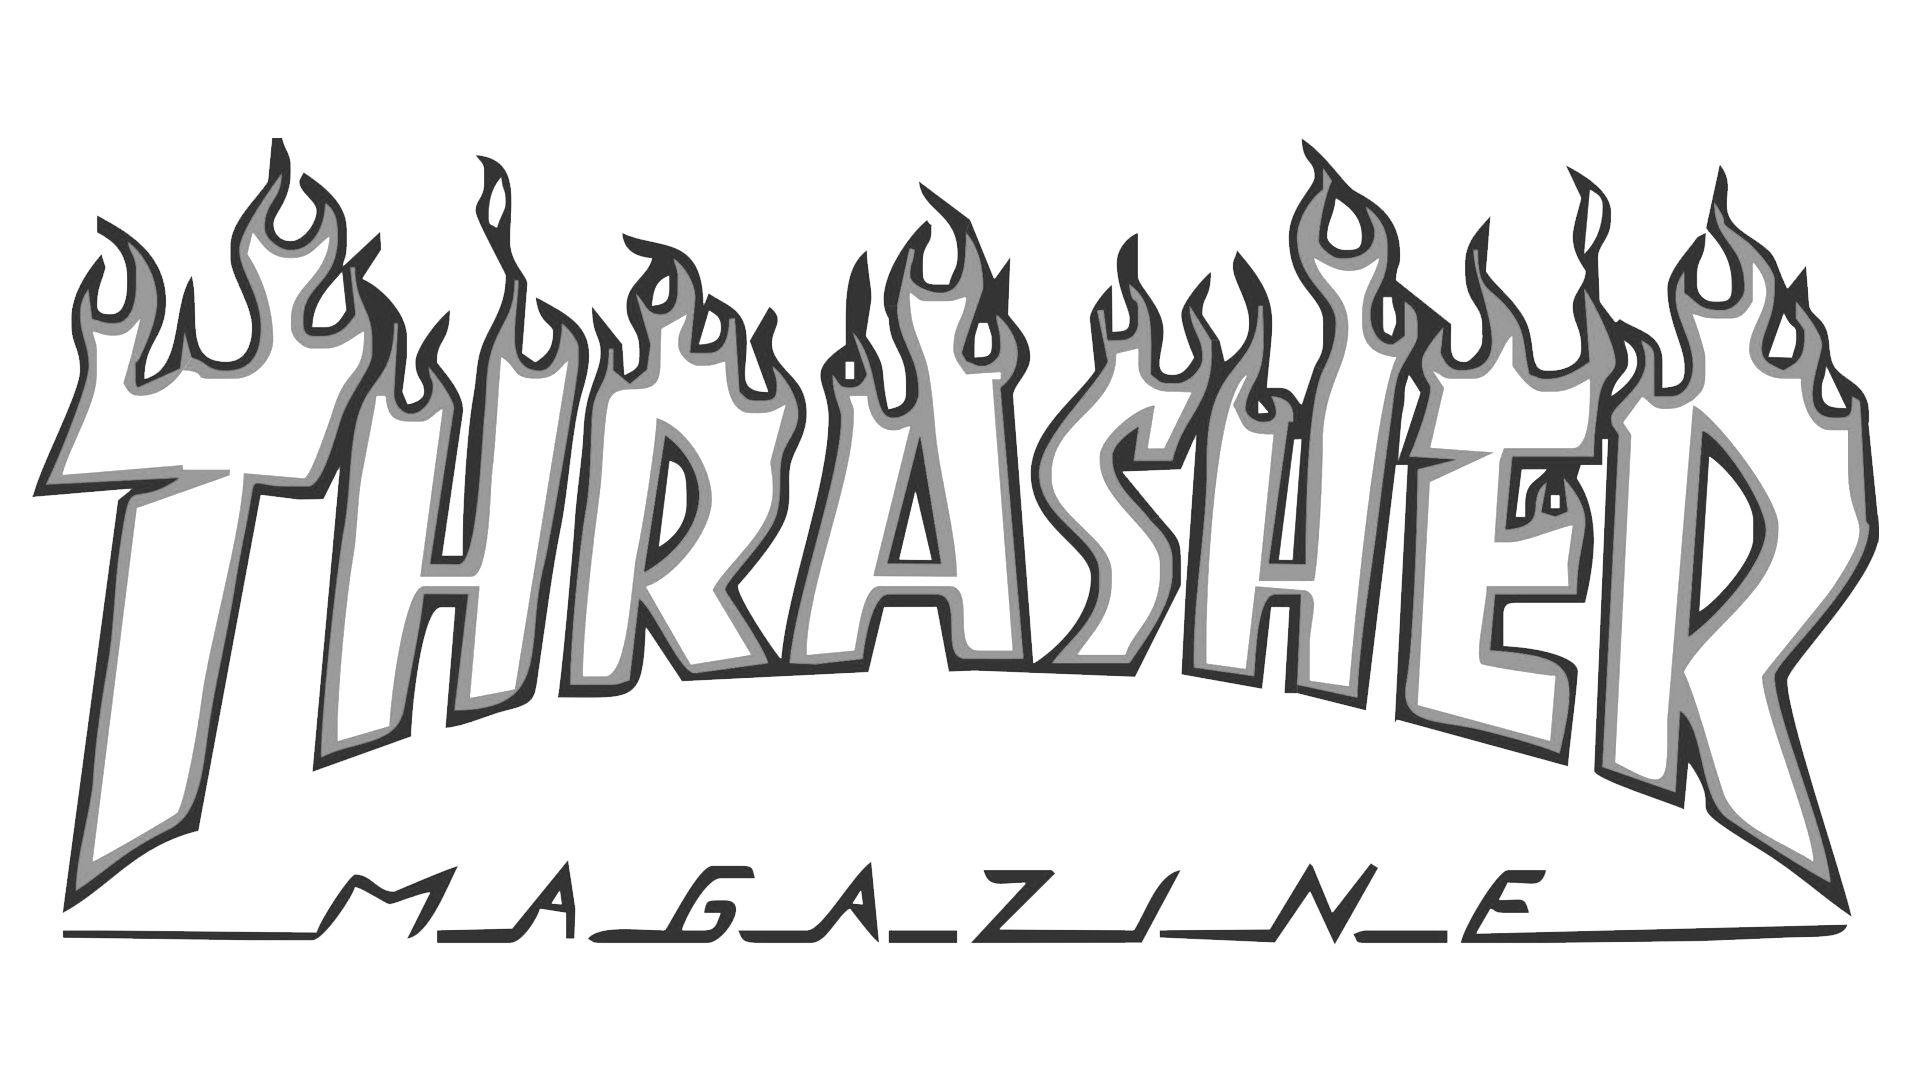 Black and White Thrasher Logo - Thrasher Logo, Thrasher Symbol, Meaning, History and Evolution